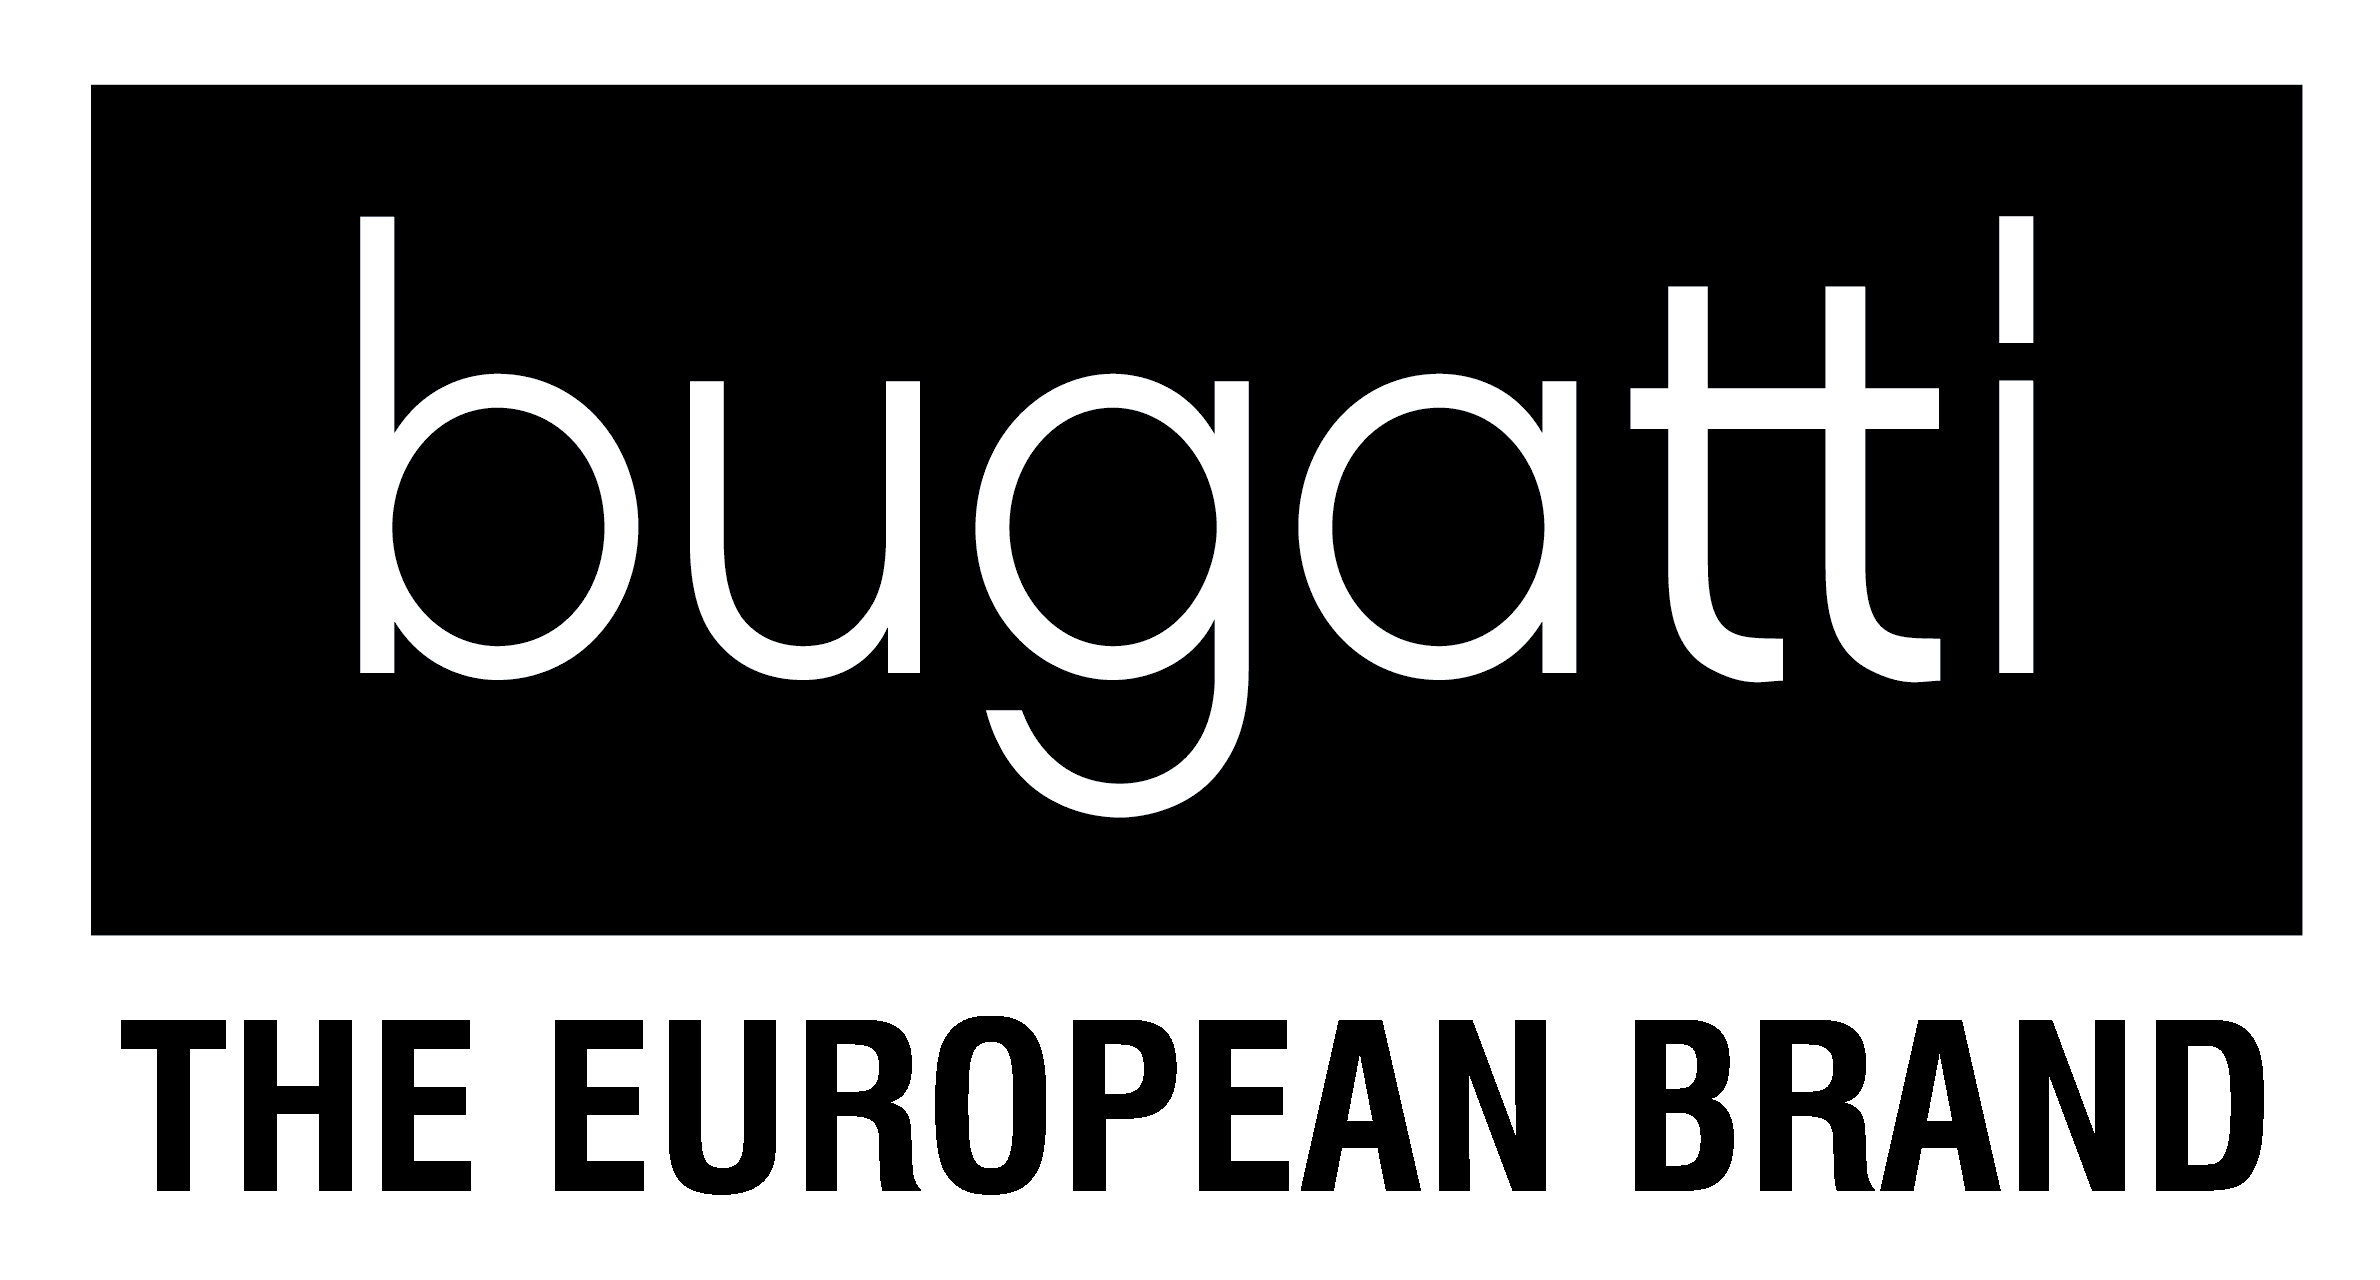 Koenigsegg · Pagani logo